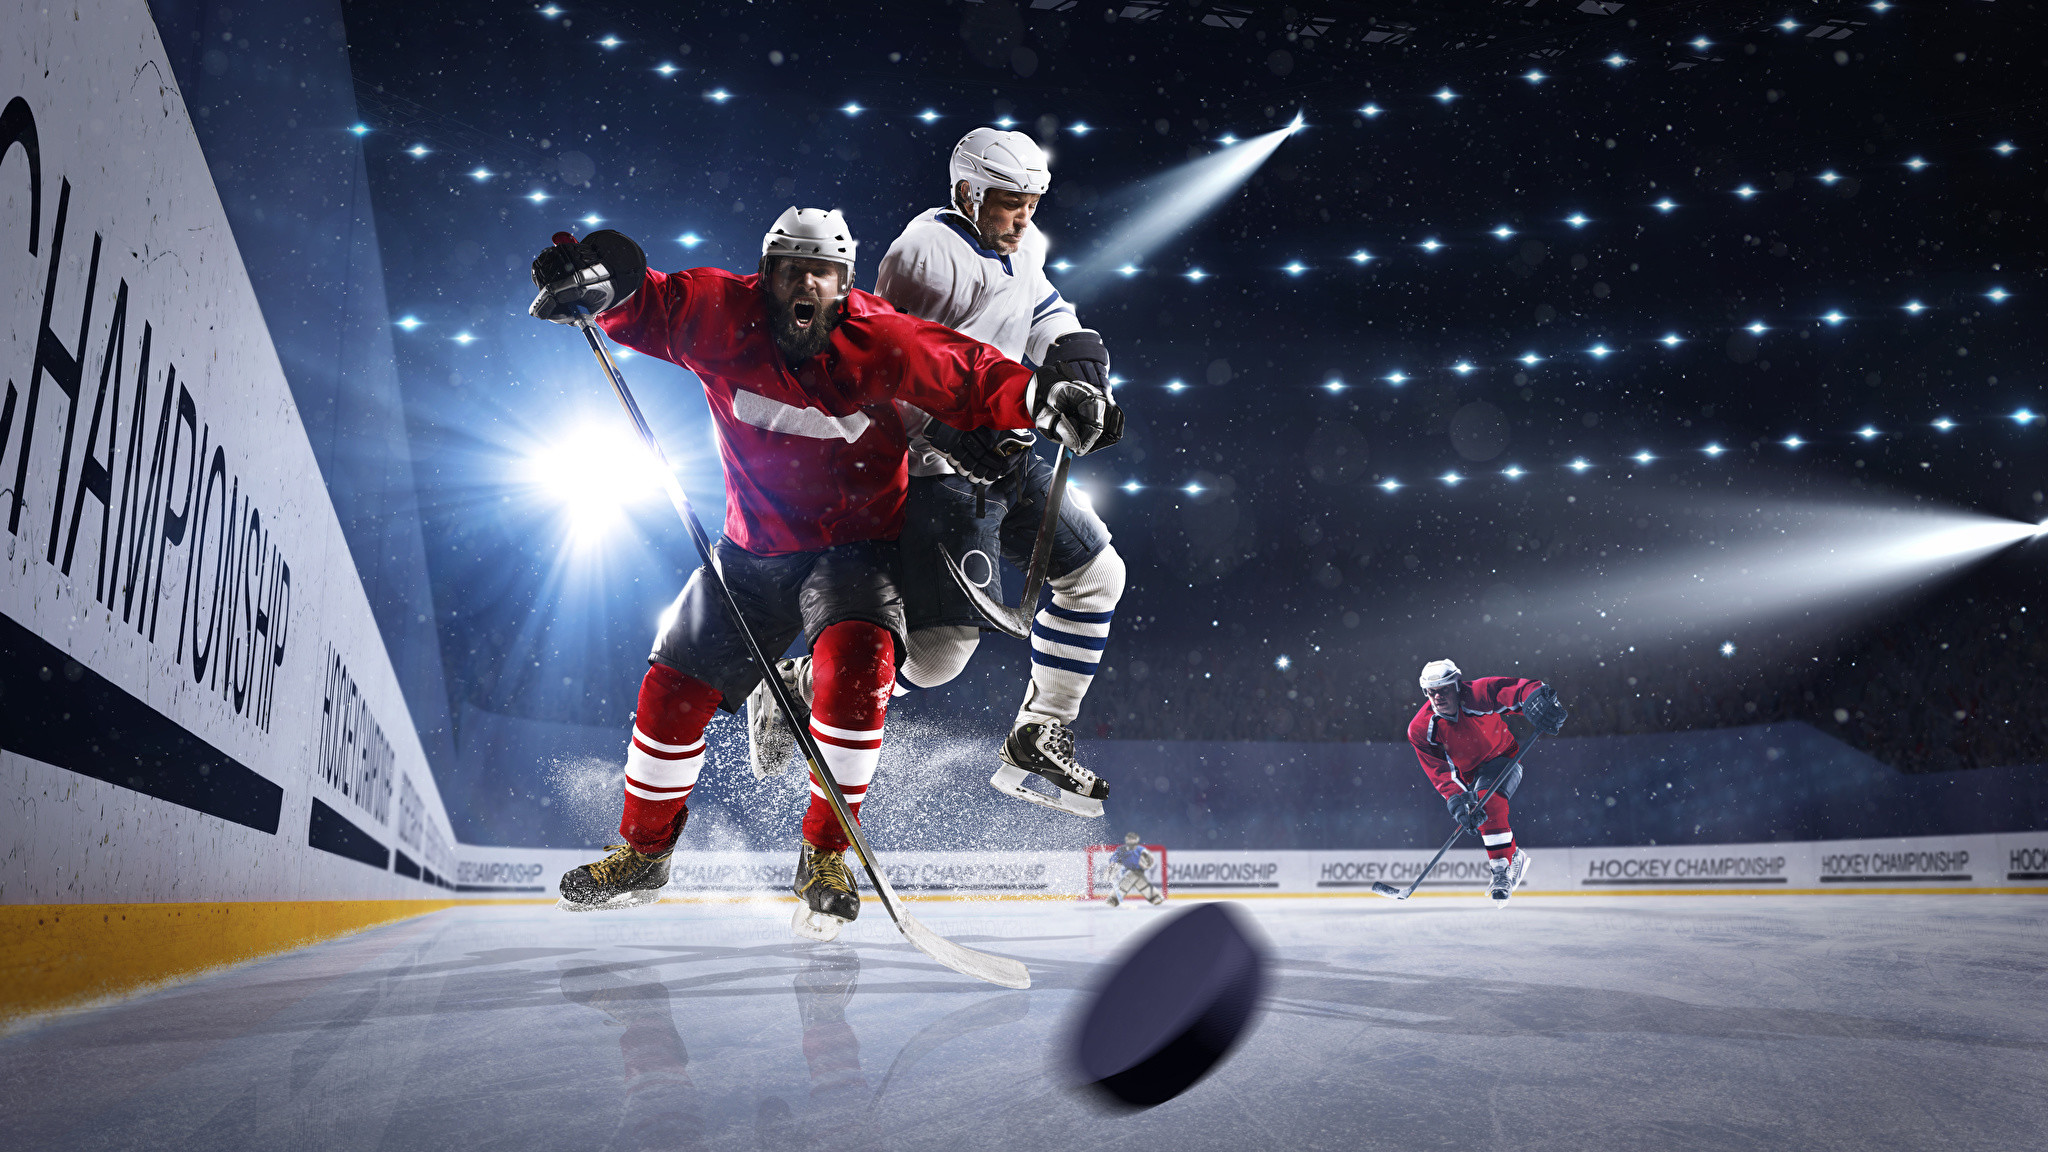 fondo de pantalla de hockey,hockey sobre hielo,hockey,juegos de palo y pelota,jugador,deportes